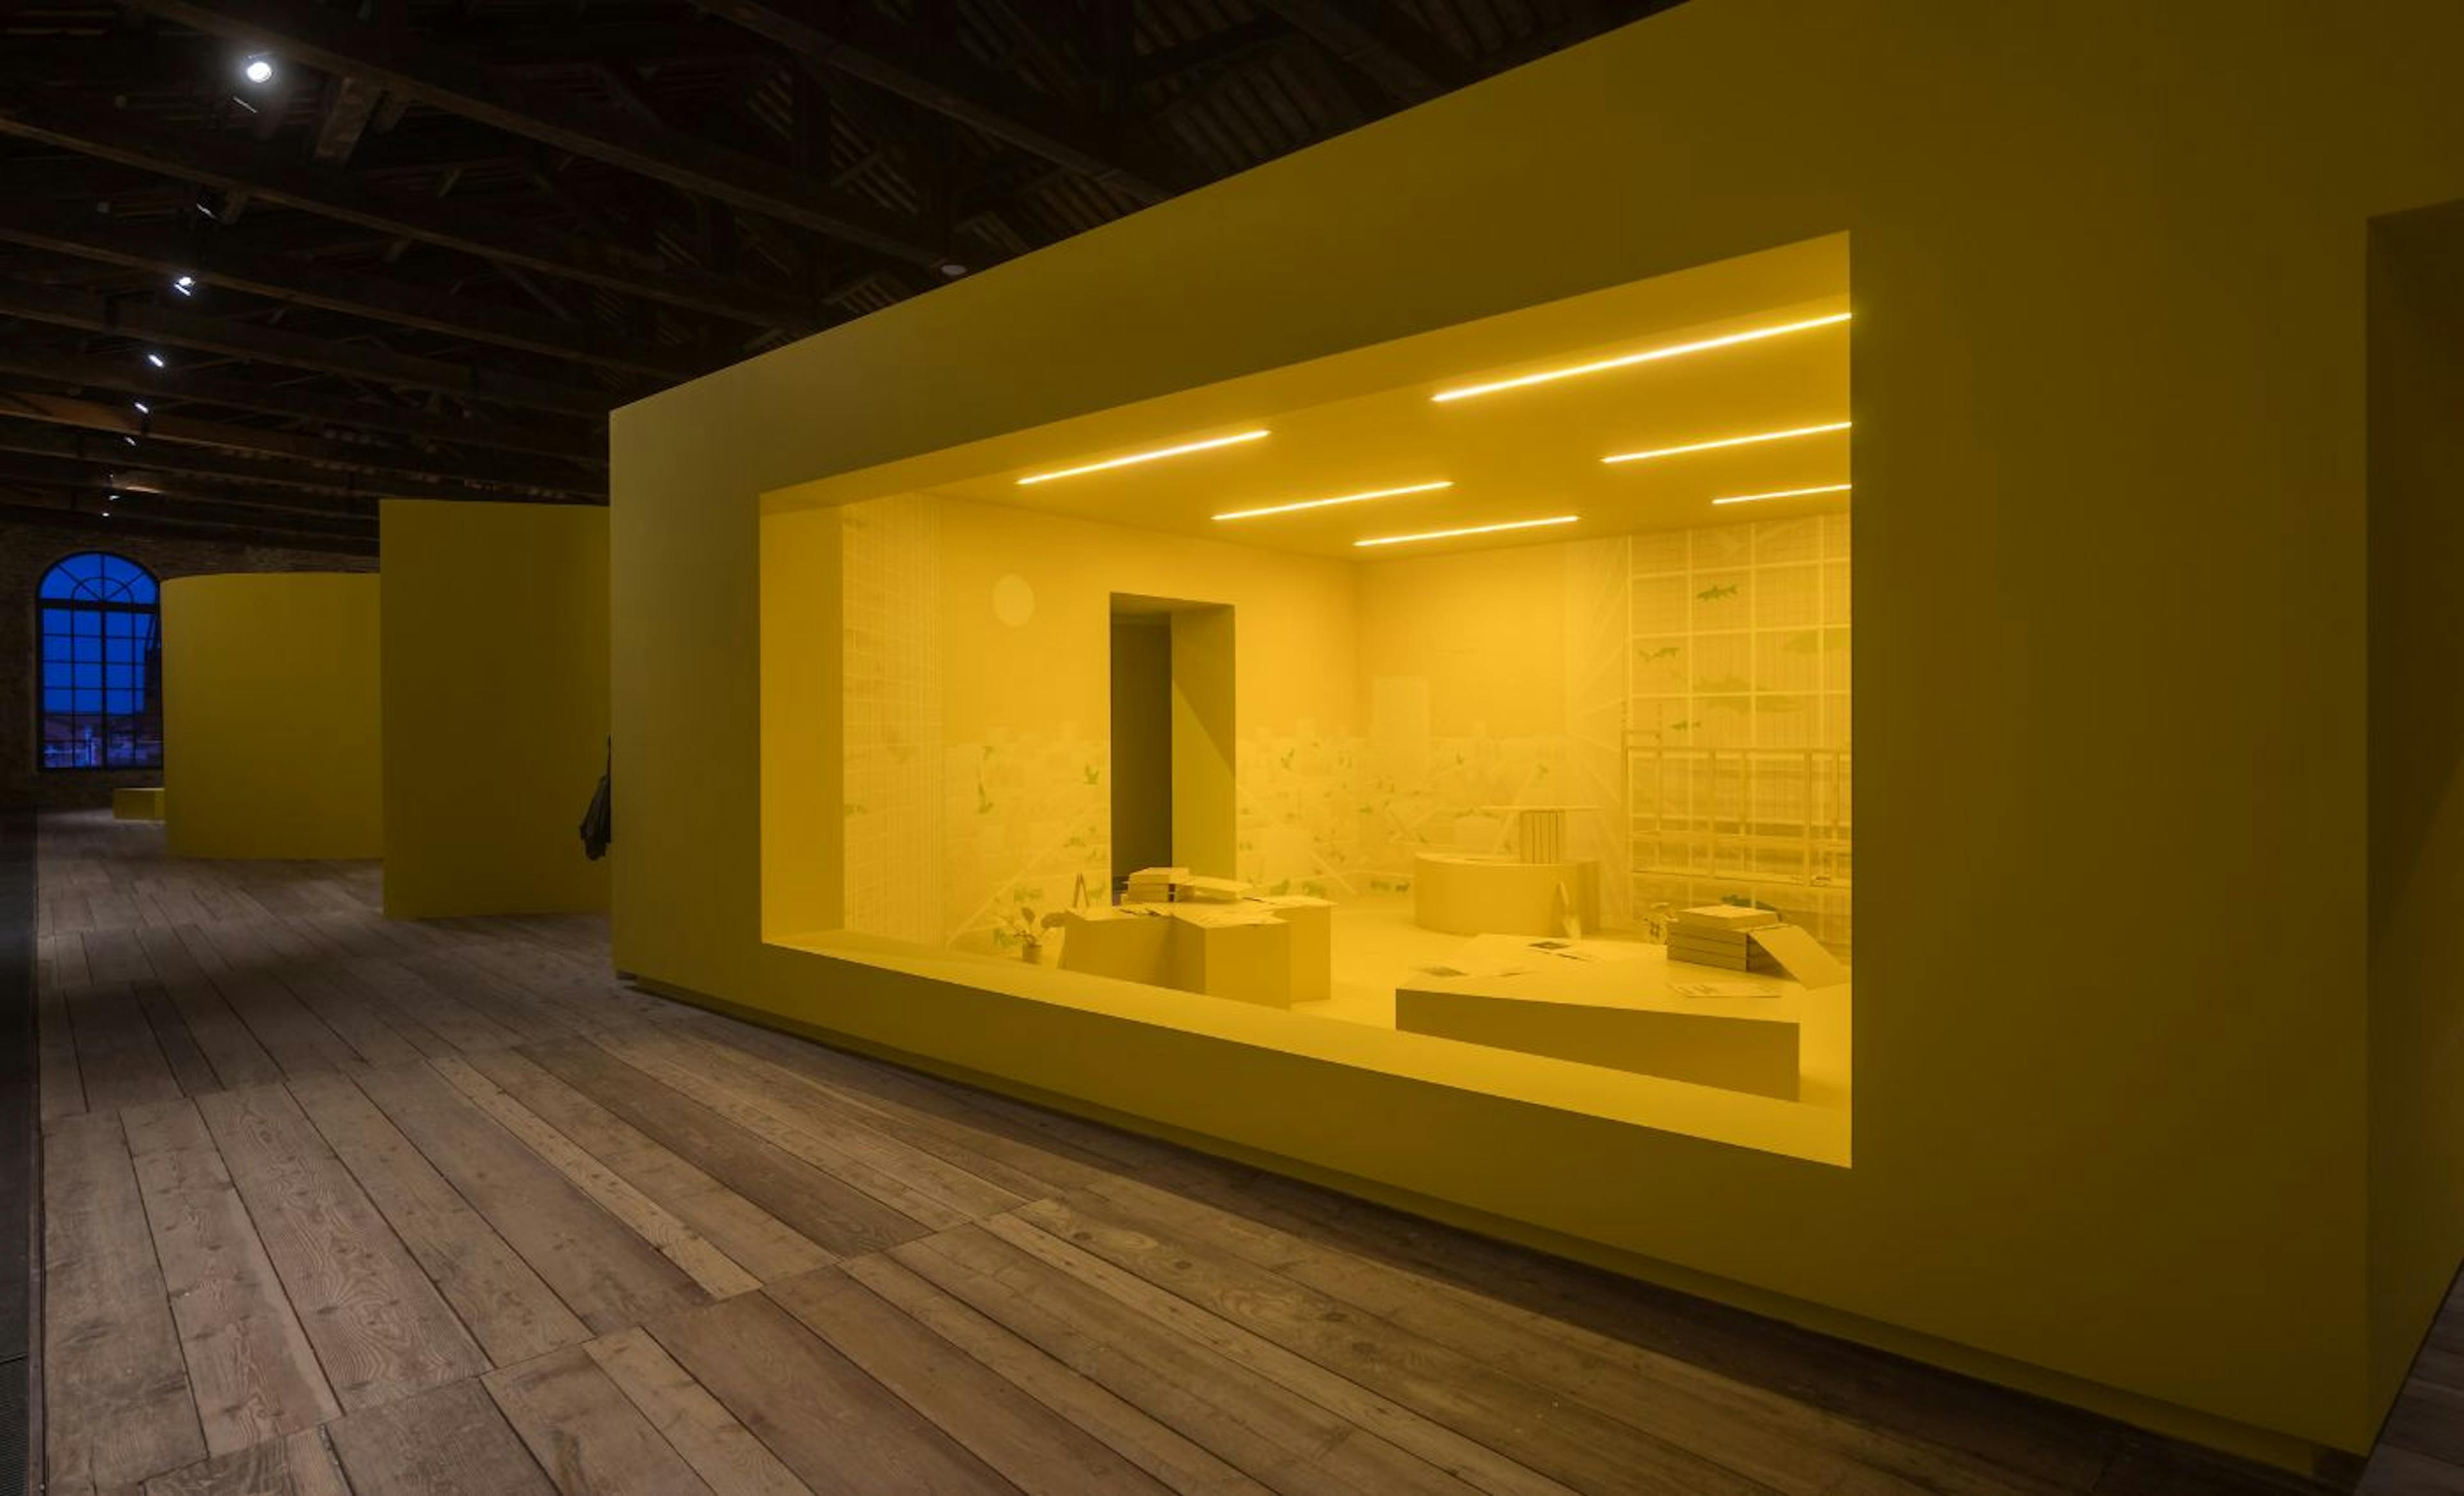 Progetto espositivo Padiglione Turchia per Biennale Architettura in mostra all'Arsenale di Venezia